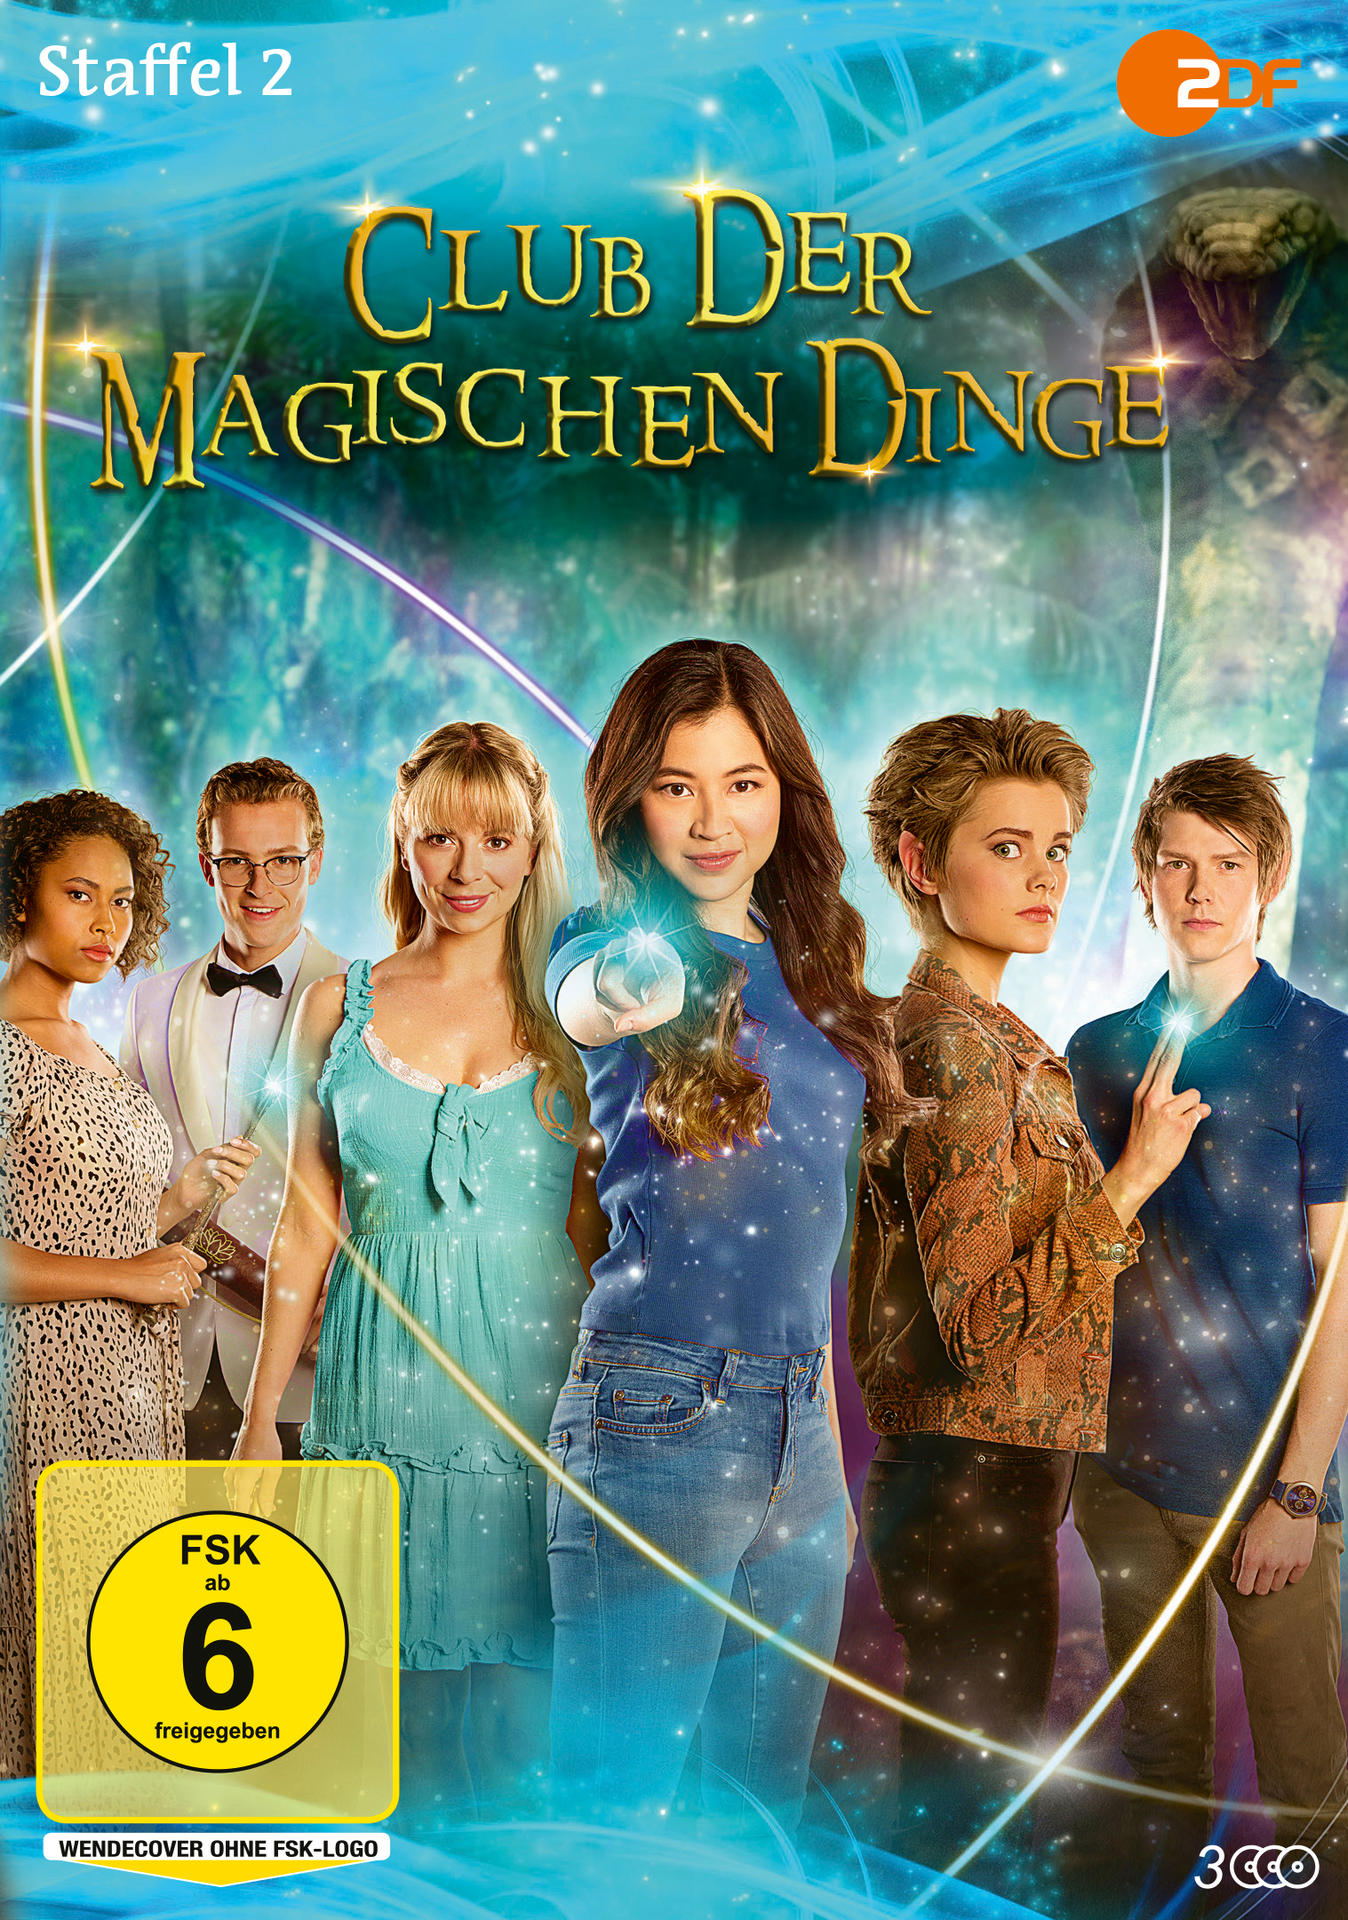 Club 2 Staffel Dinge der - magischen DVD